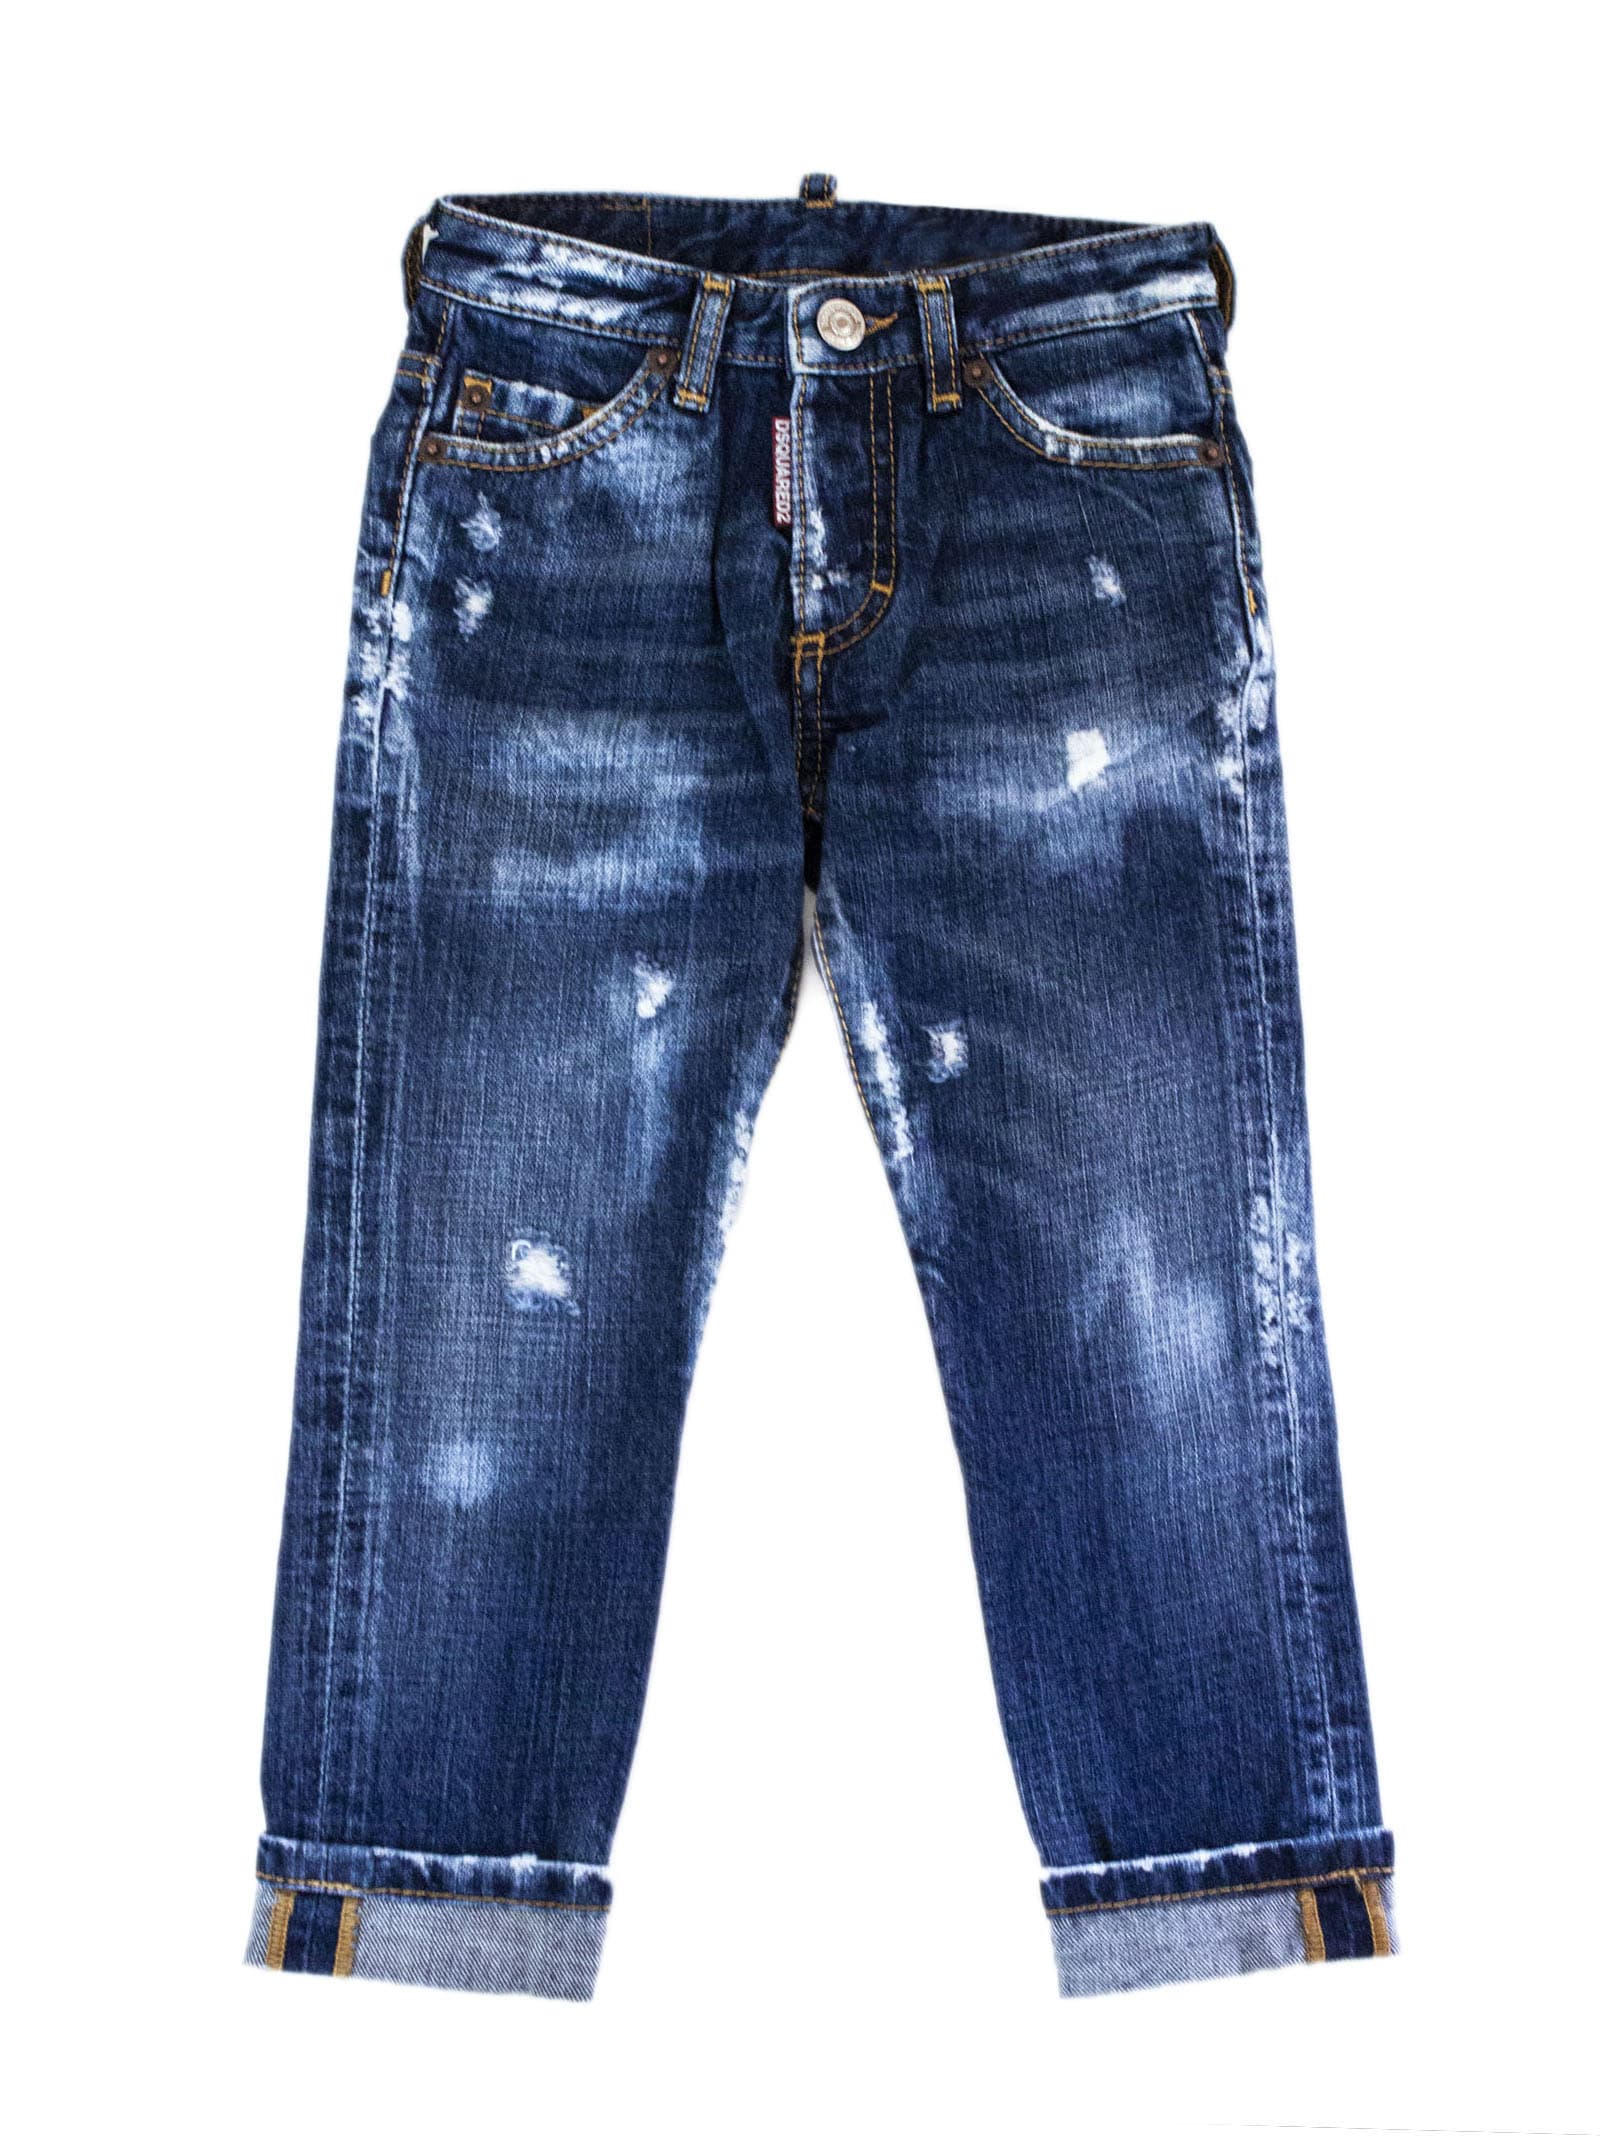 Dsquared2 Blue Cotton Jeans.